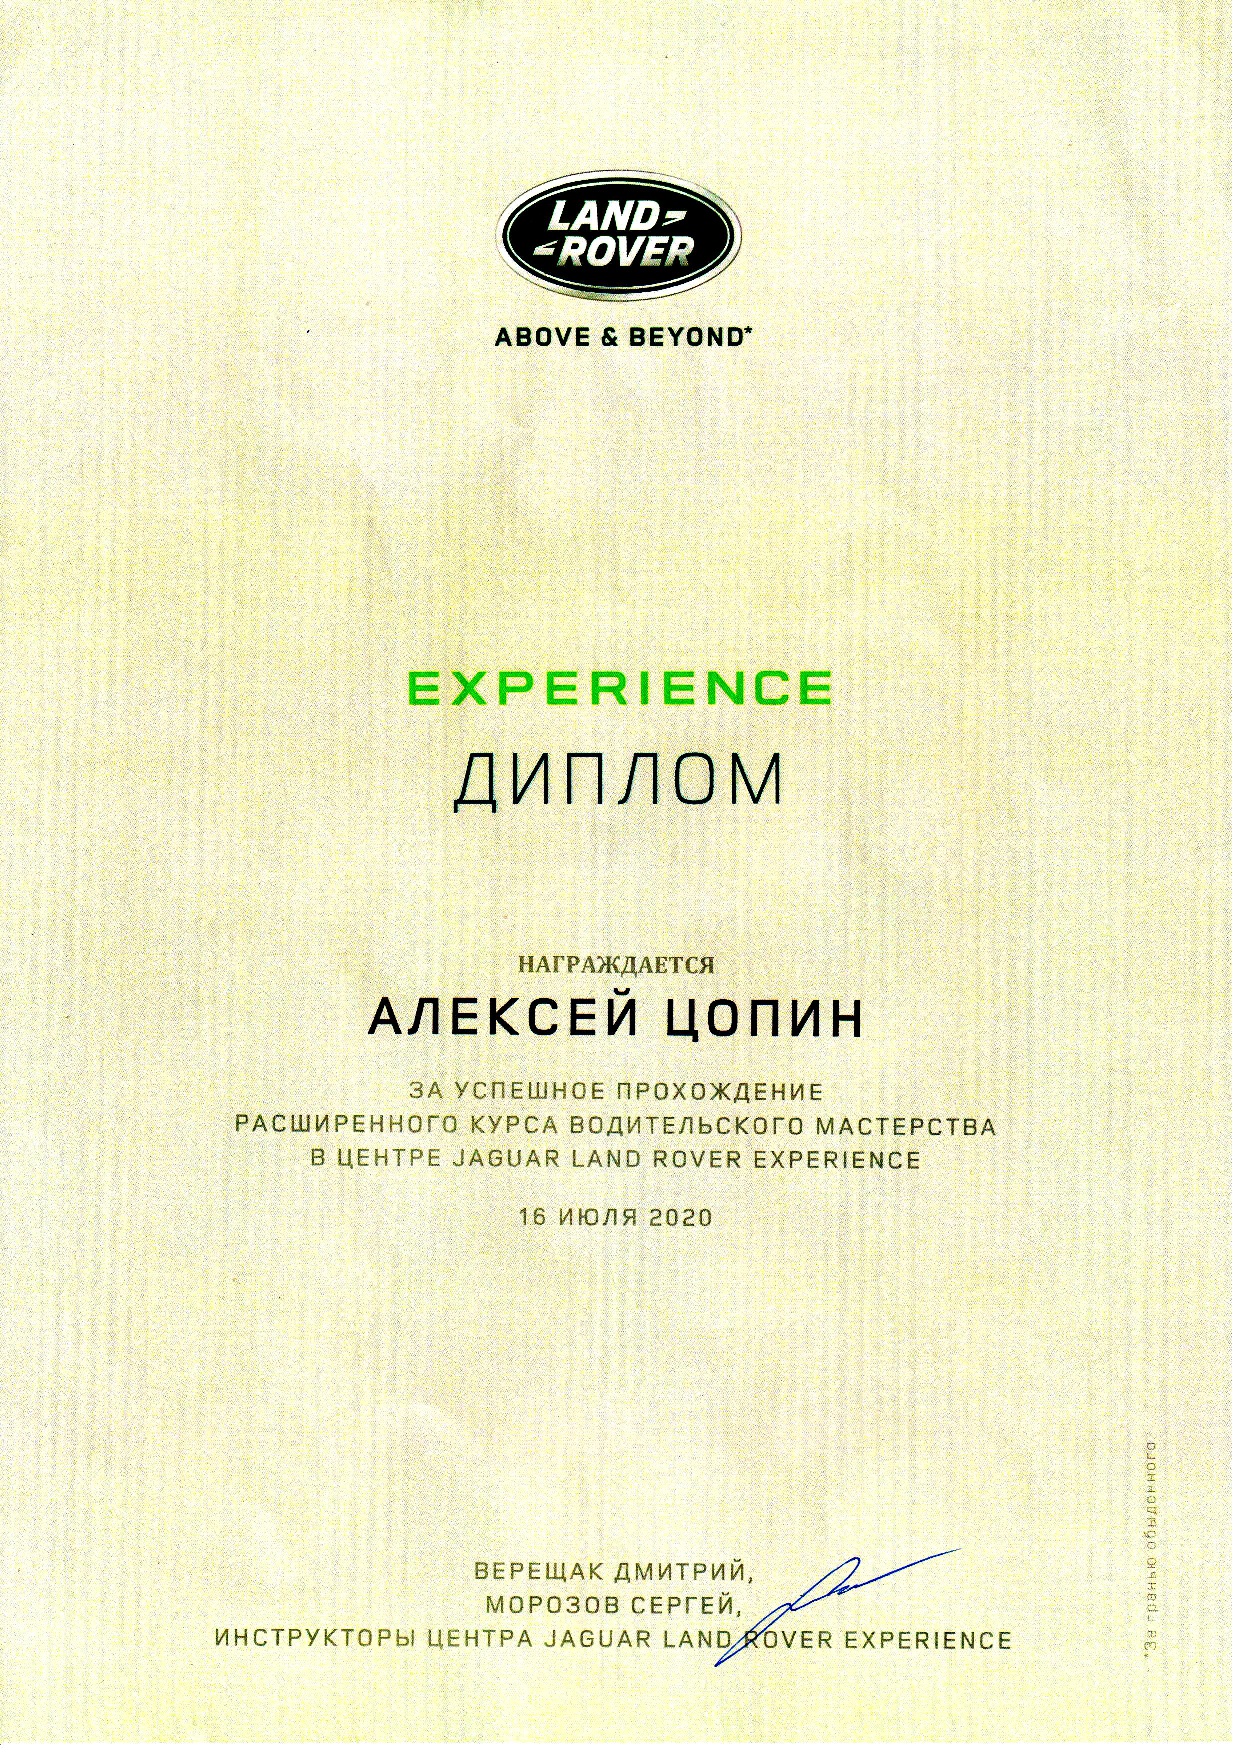 Сертификат инструктора Цопина Алексея